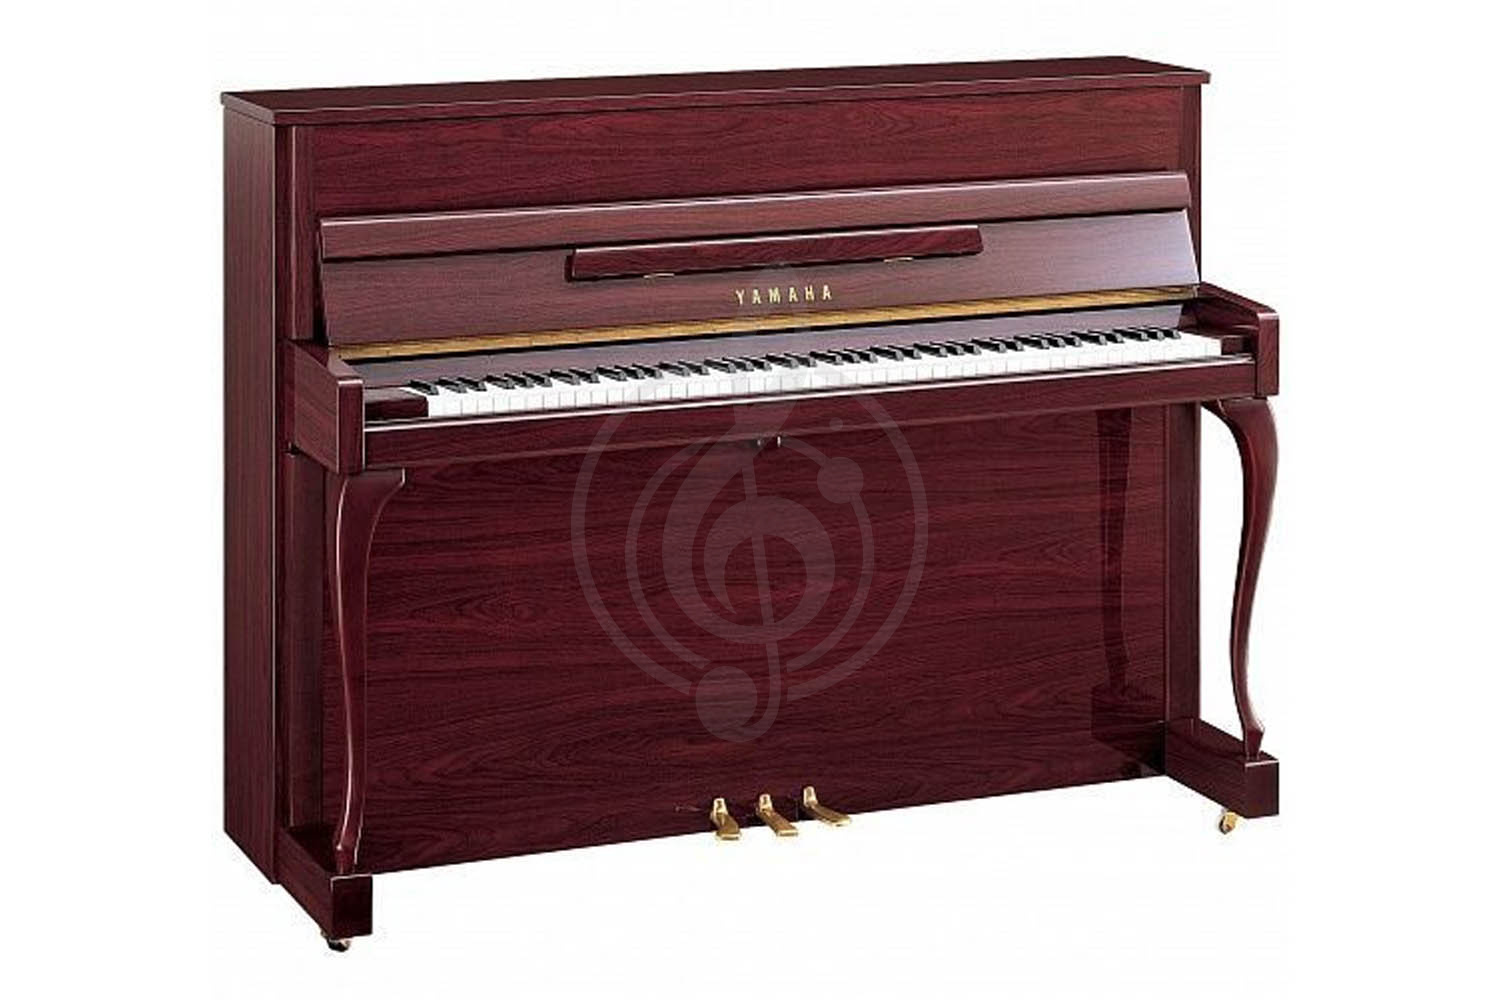 Акустическое пианино Пианино Yamaha Yamaha JX113CP PM - пианино 113см. , цвет красное дерево, полированное, с банкеткой JX113CPPM//LZ.WITHBENCH - фото 1